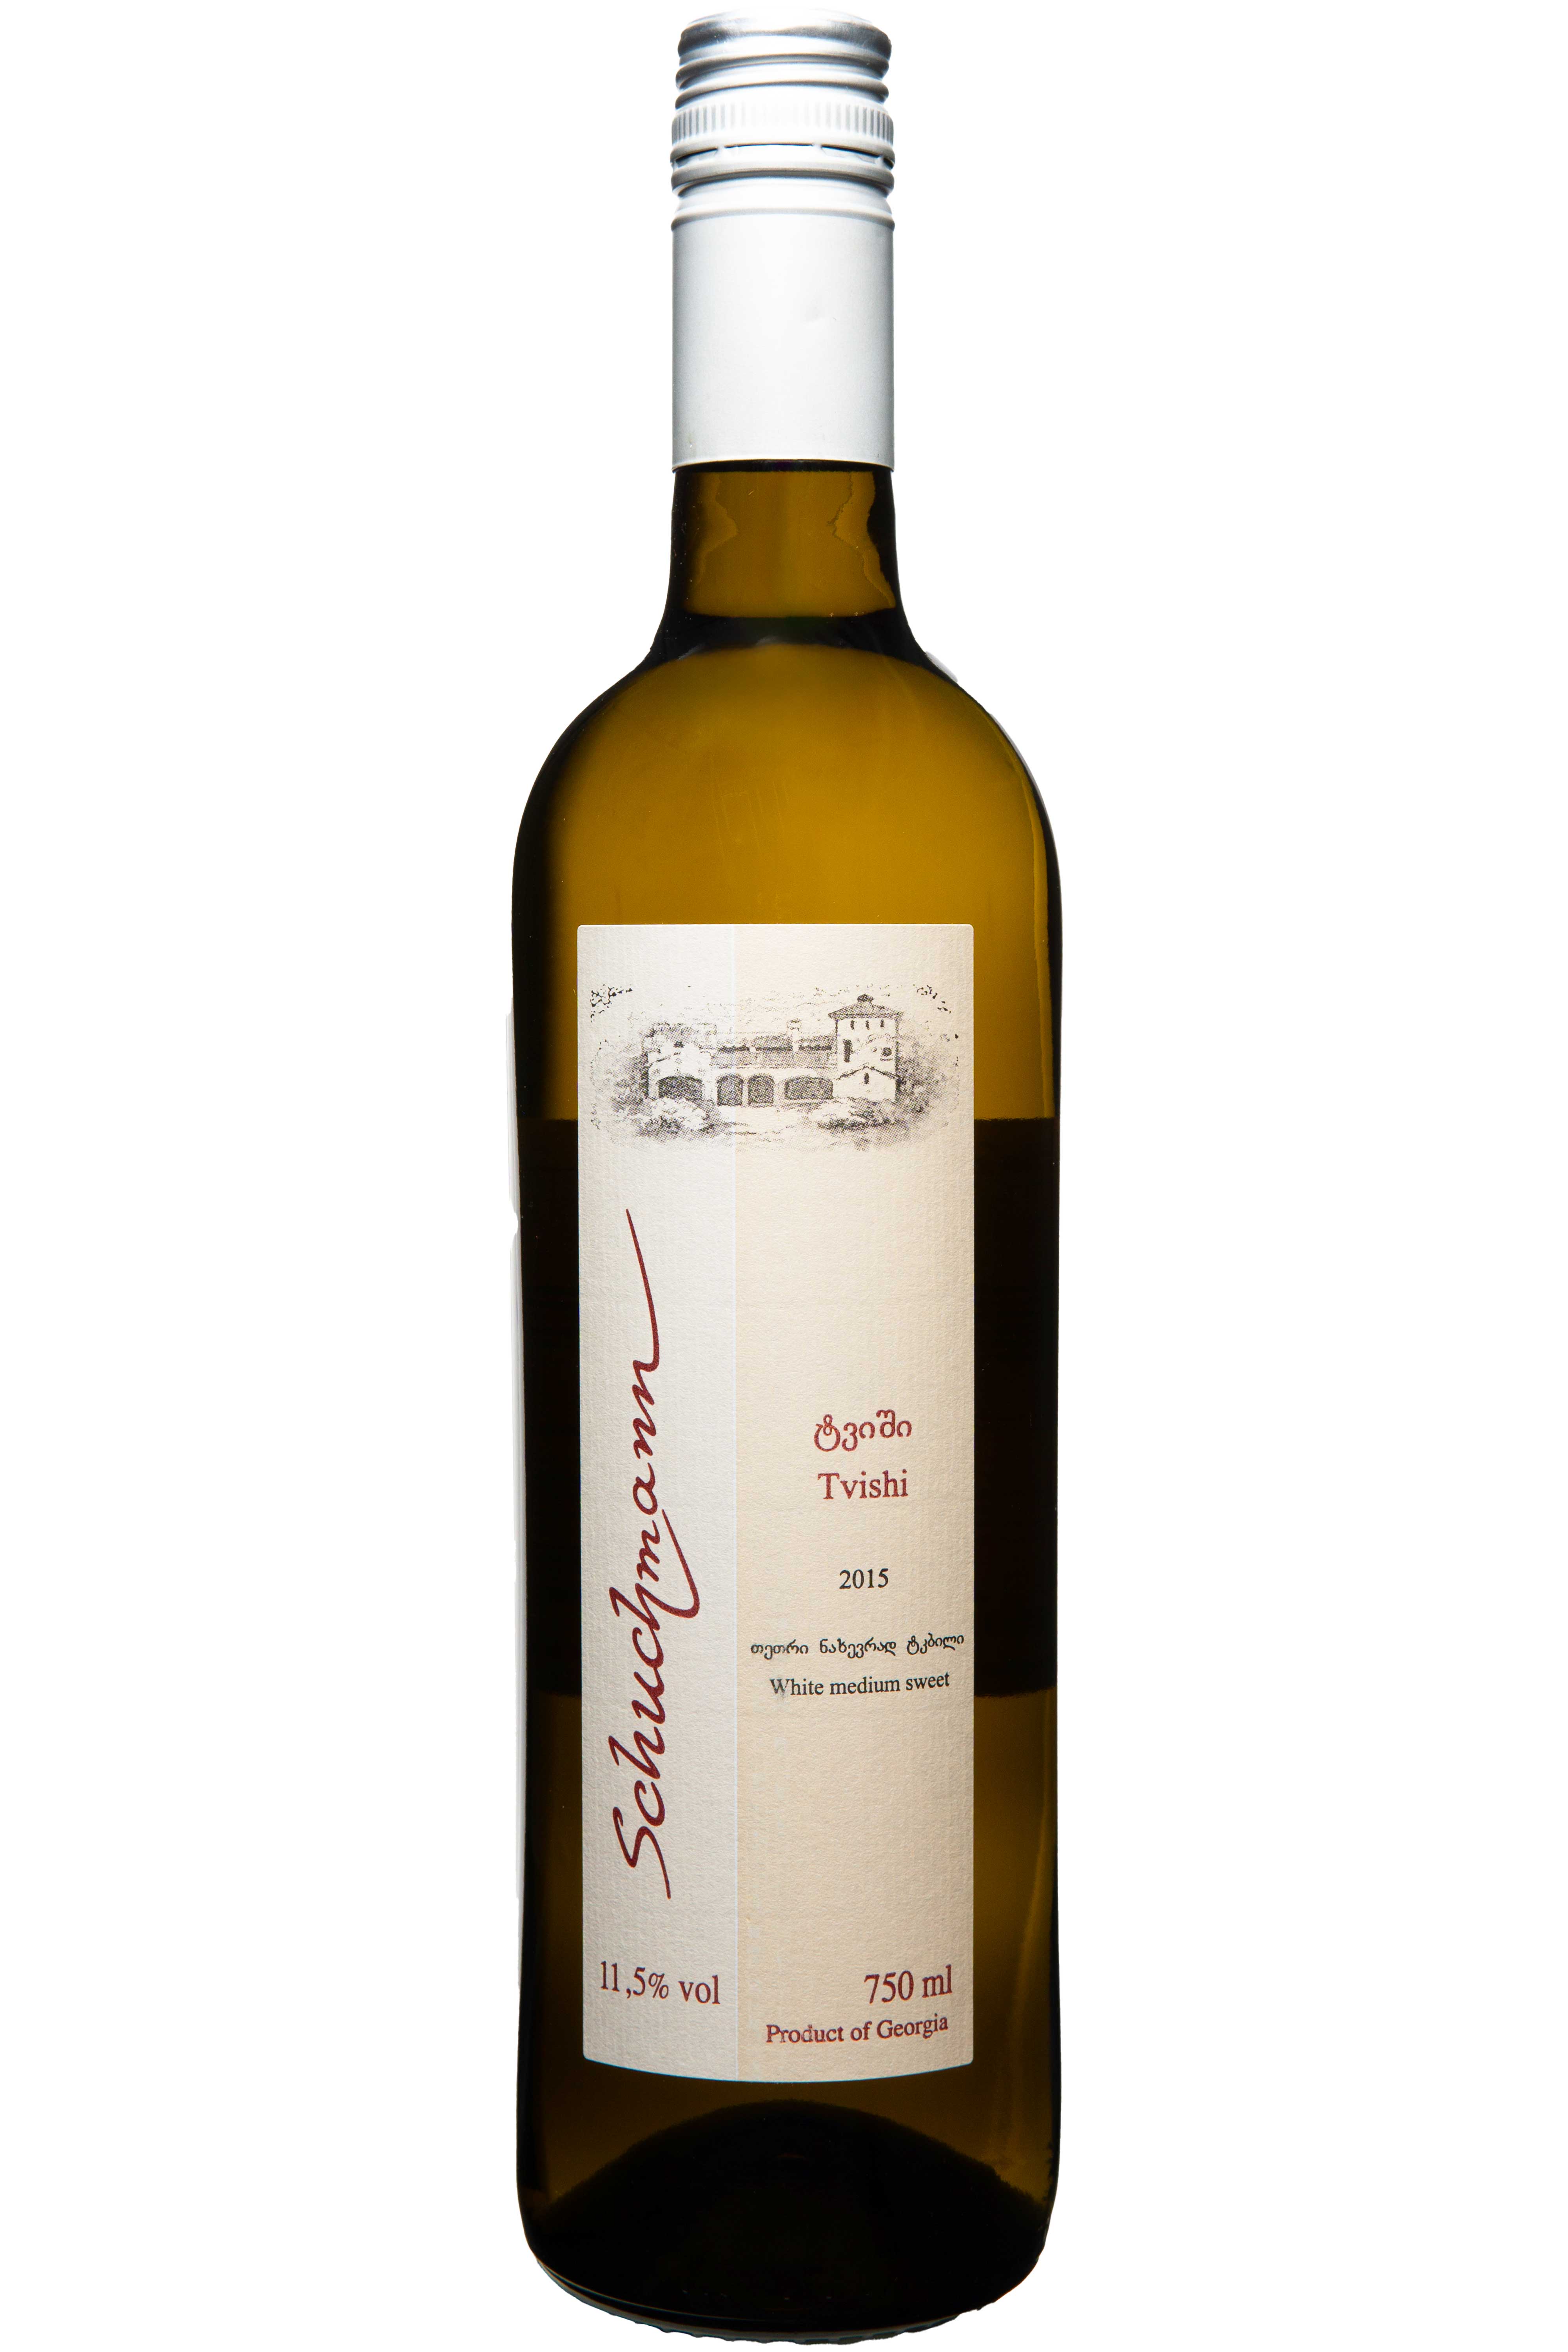 Georgischer Wein Flasche 0,75 Liter Schuchmann Tvishi 2015 Weißwein lieblich